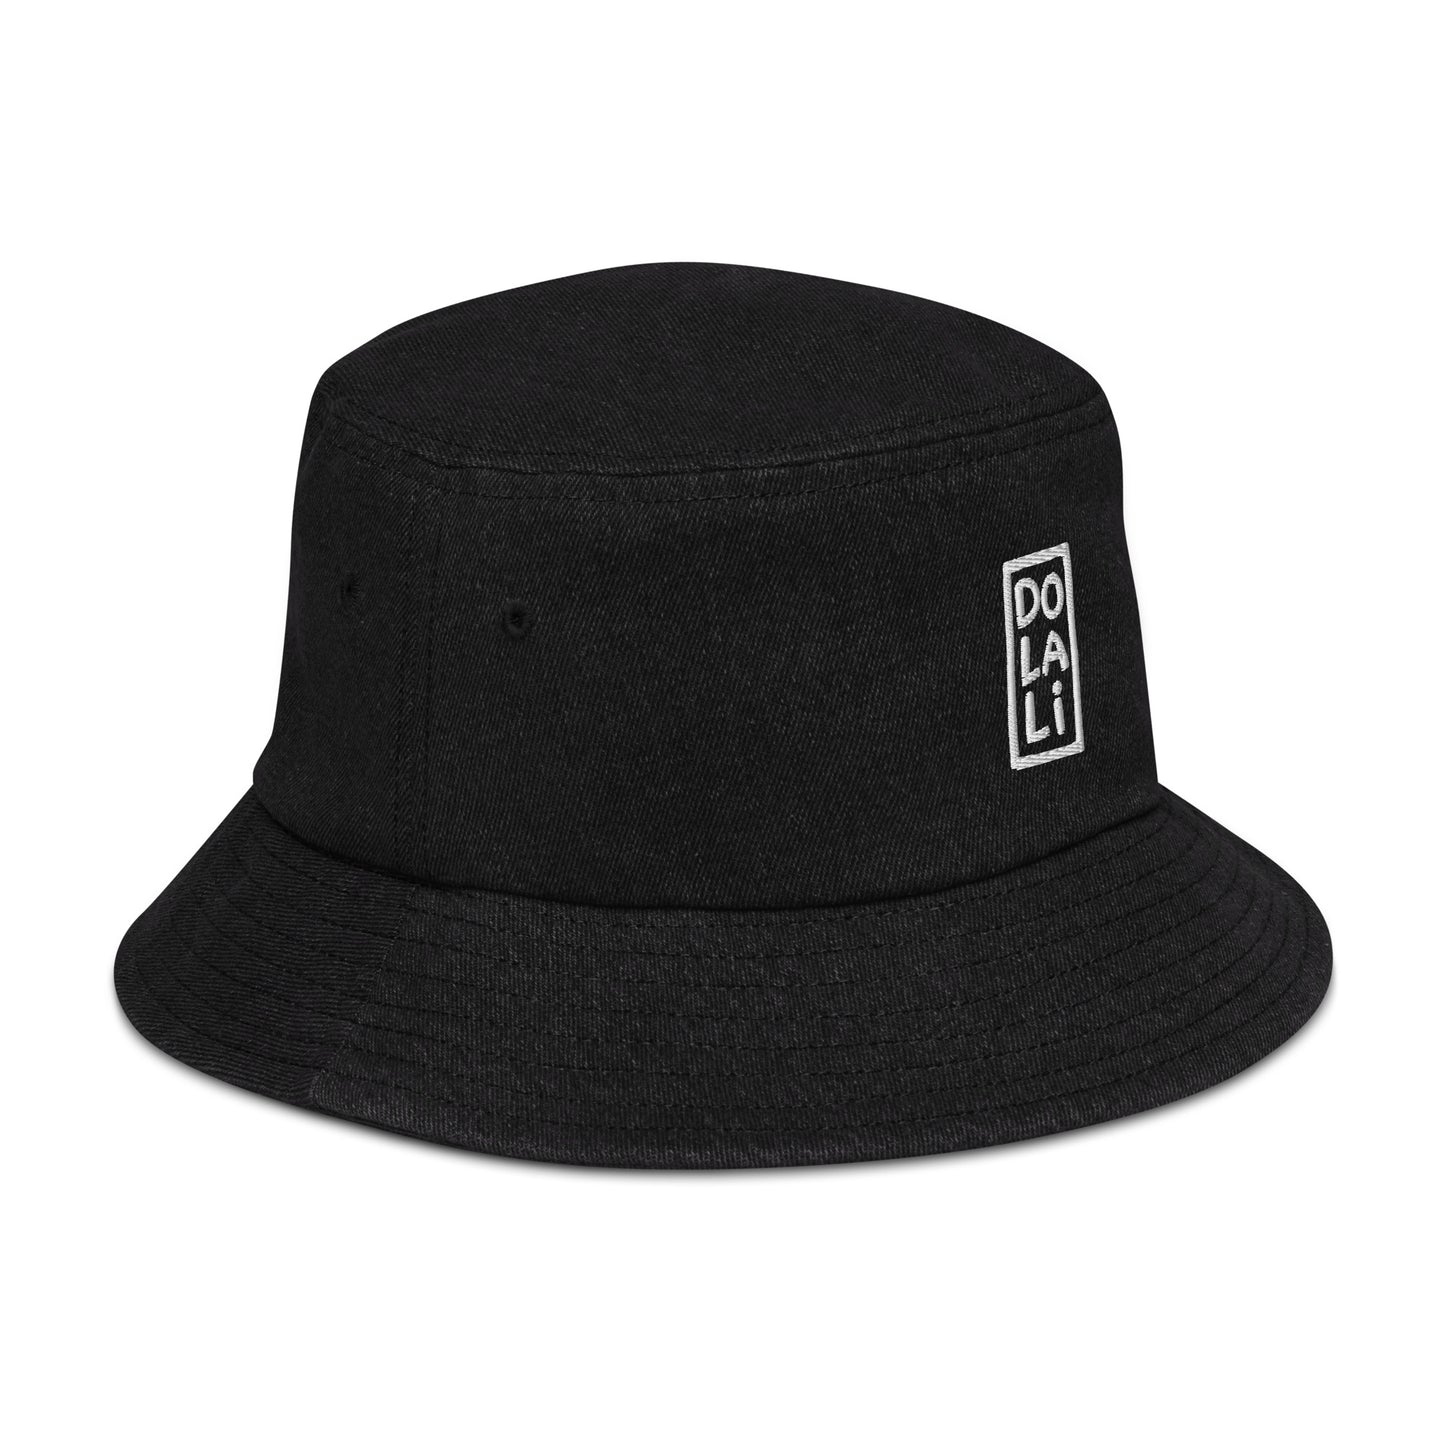 Embroidered Denim Bucket Hat